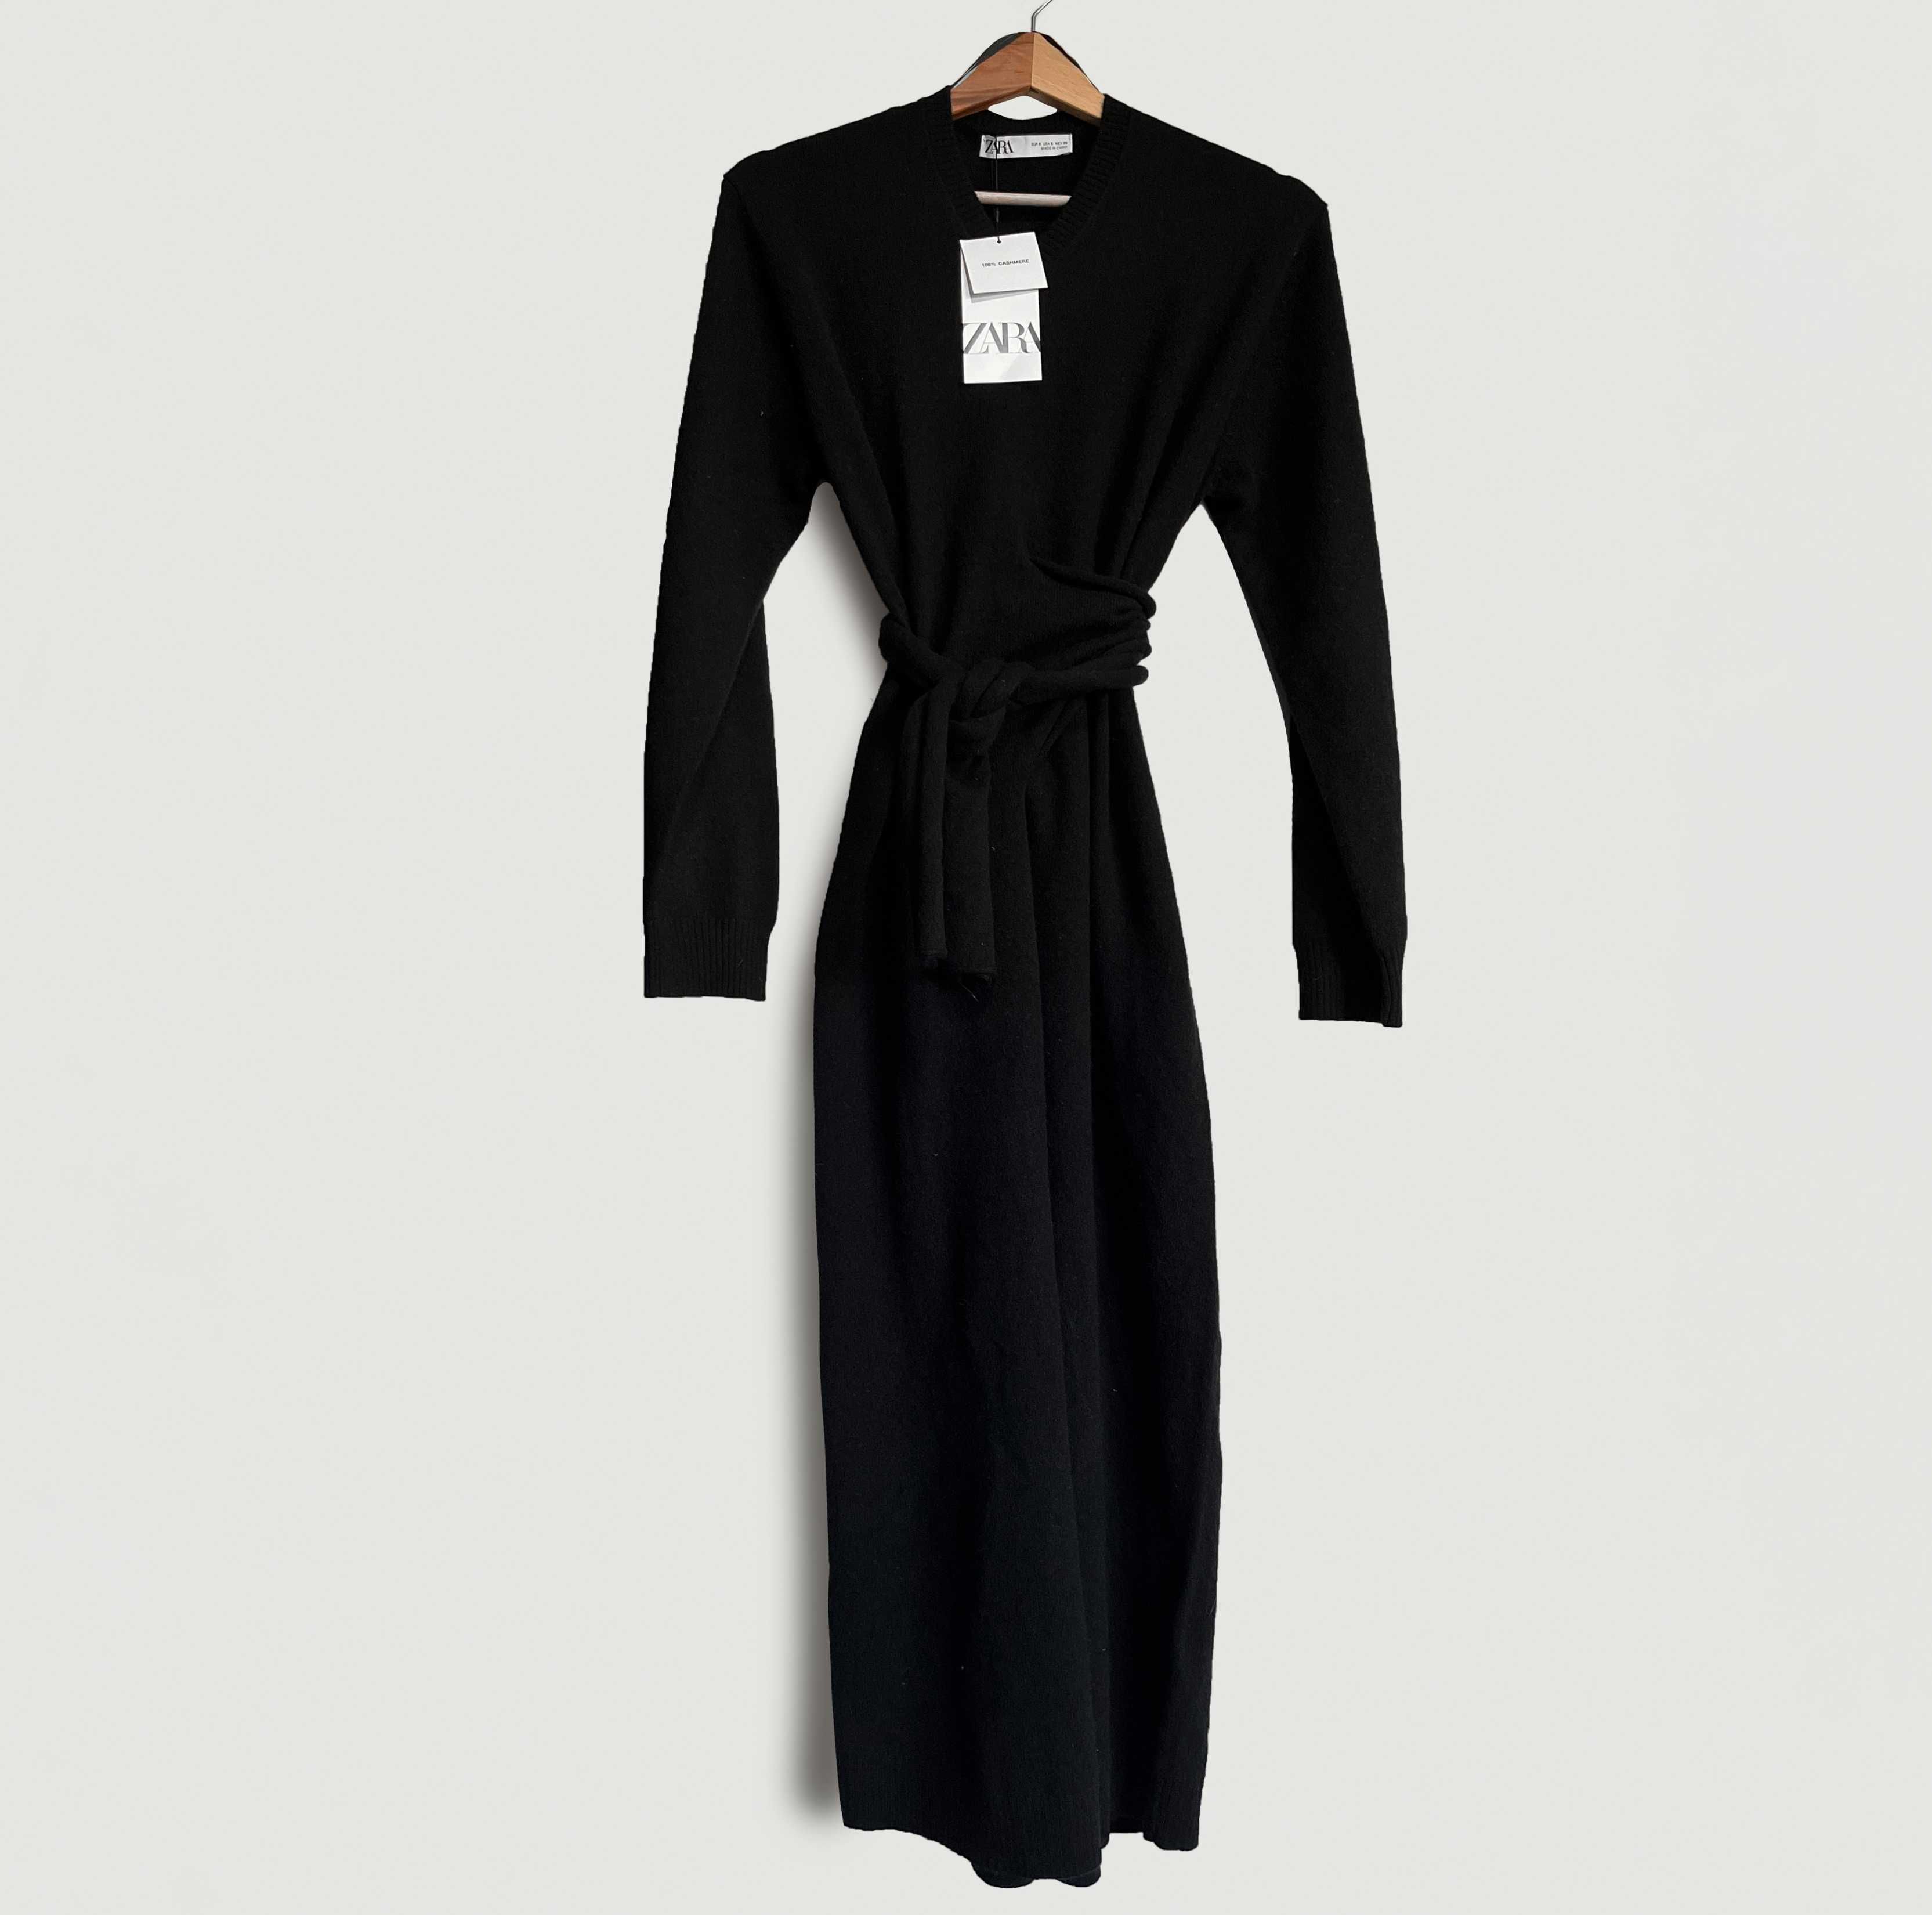 Zara sukienka 100% kaszmir czarna premium S 36